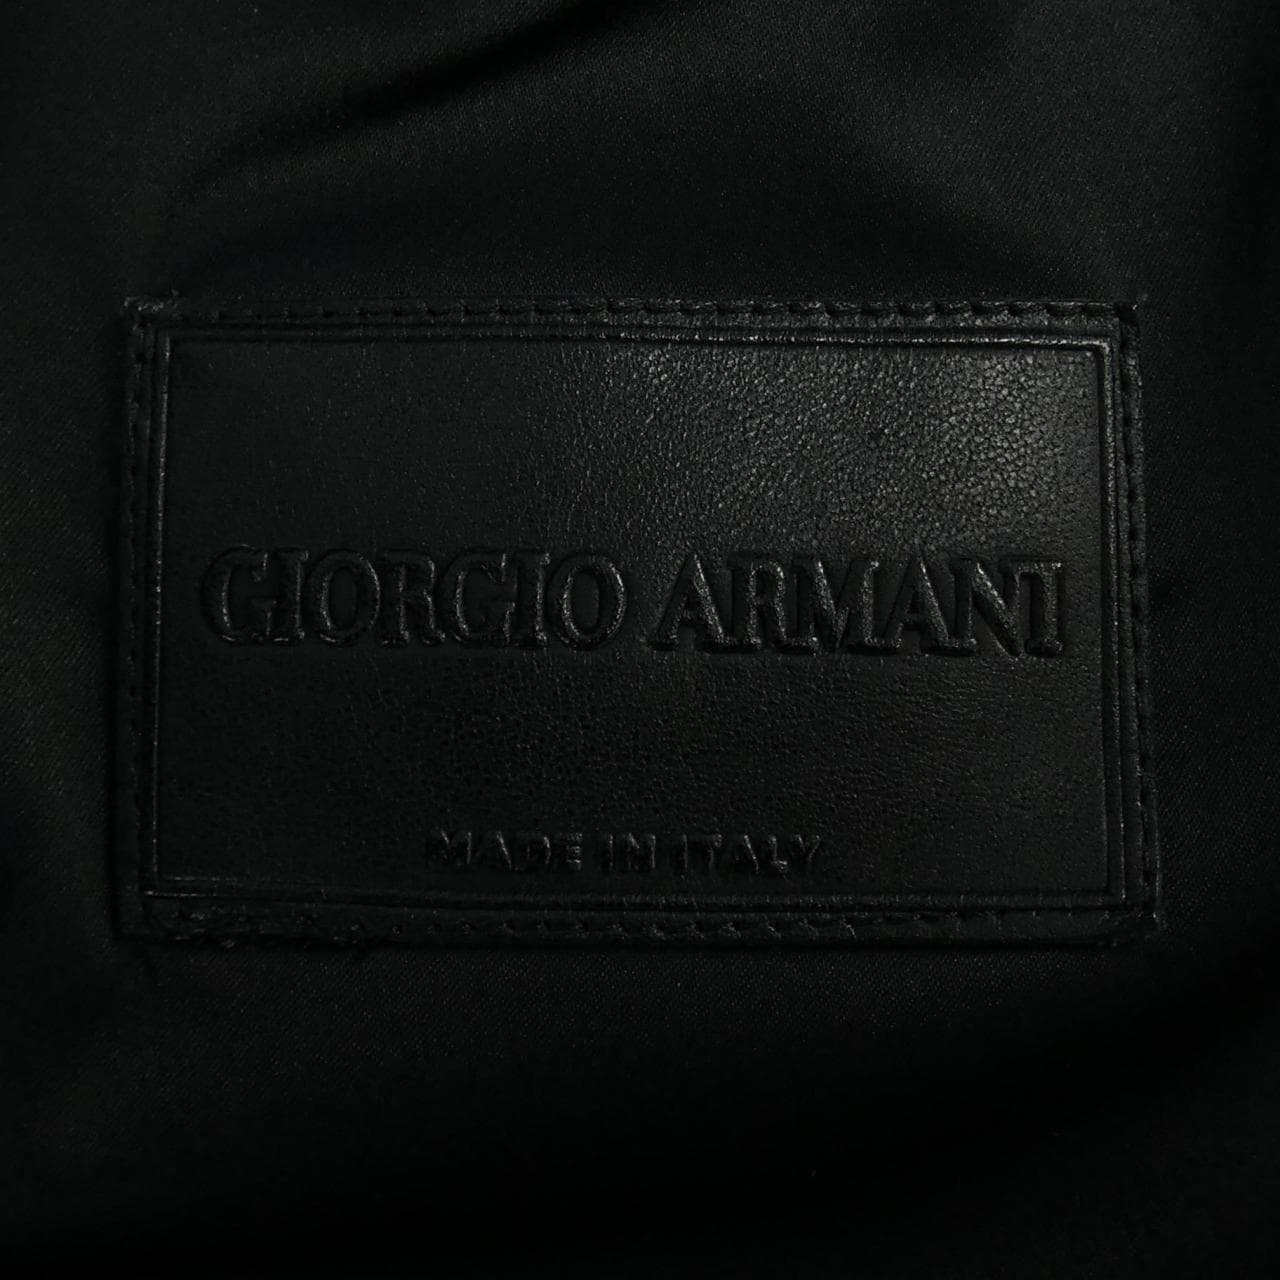 Giorgio Armani GIORGIO ARMANI jacket